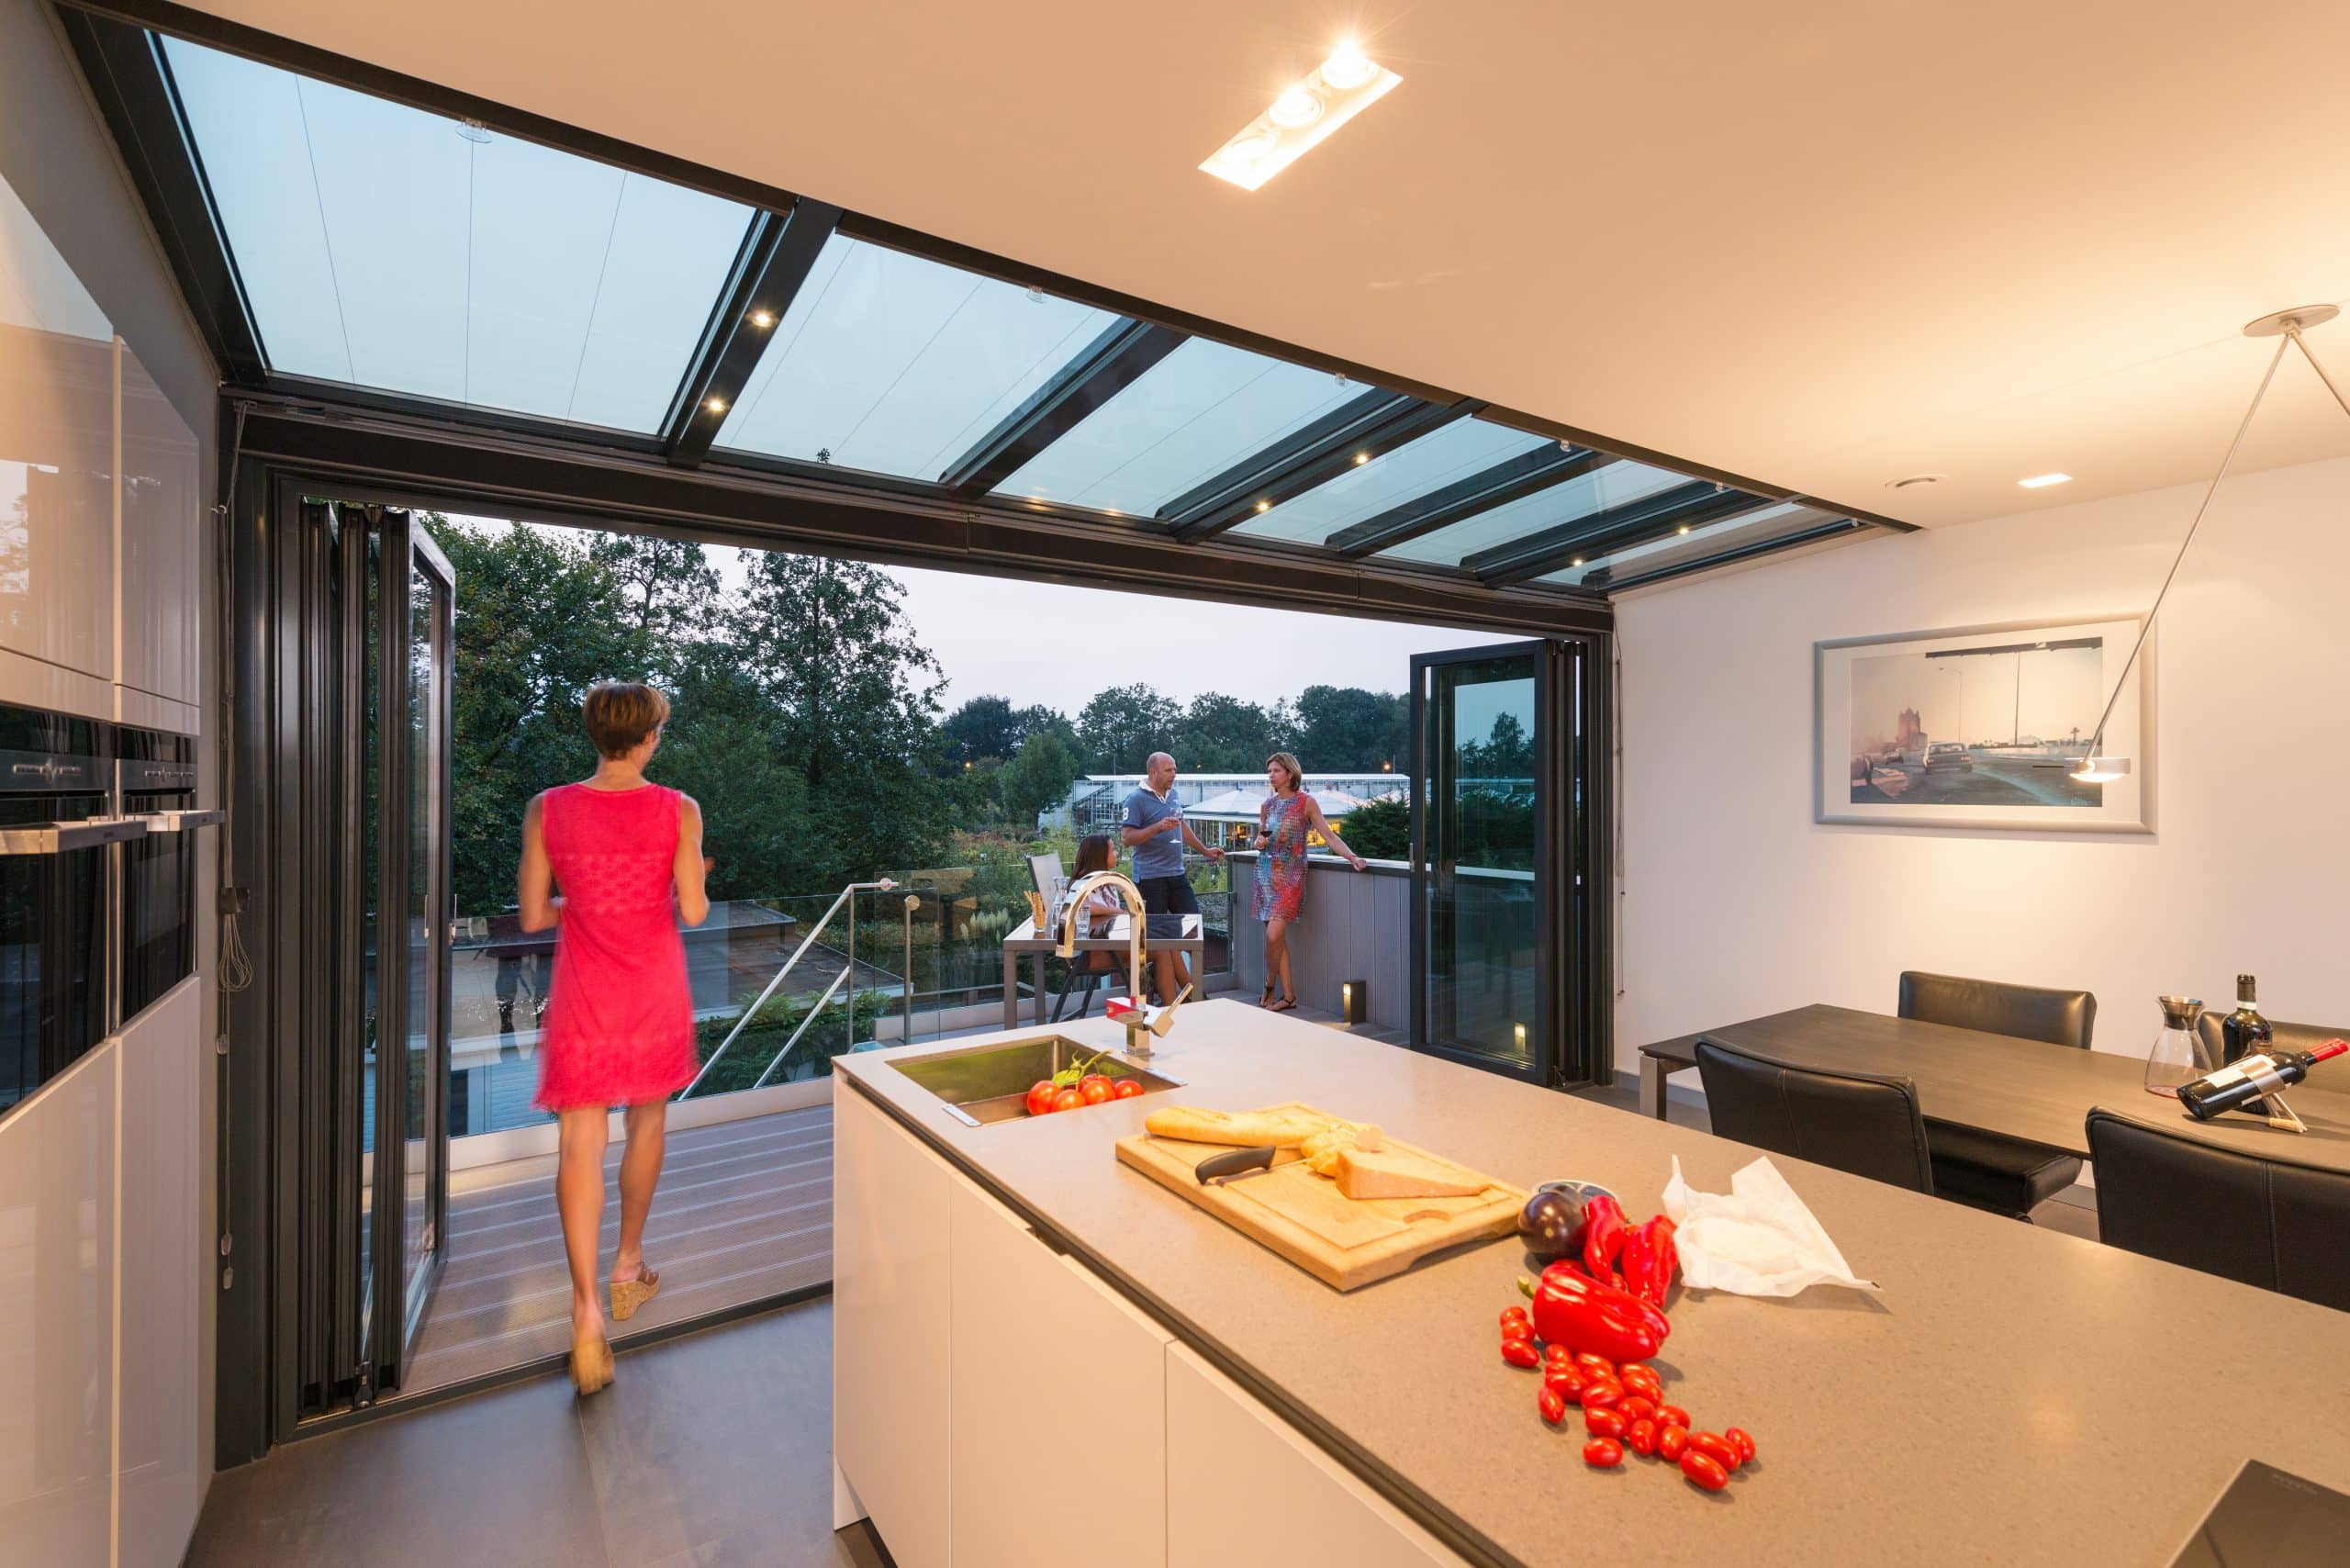 Solarlux zeigt eine Glasfaltwand die Küche und Terrasse barrierefrei voneinander trennt, Menschen unterhalten sich draussen während drin gekocht wird.